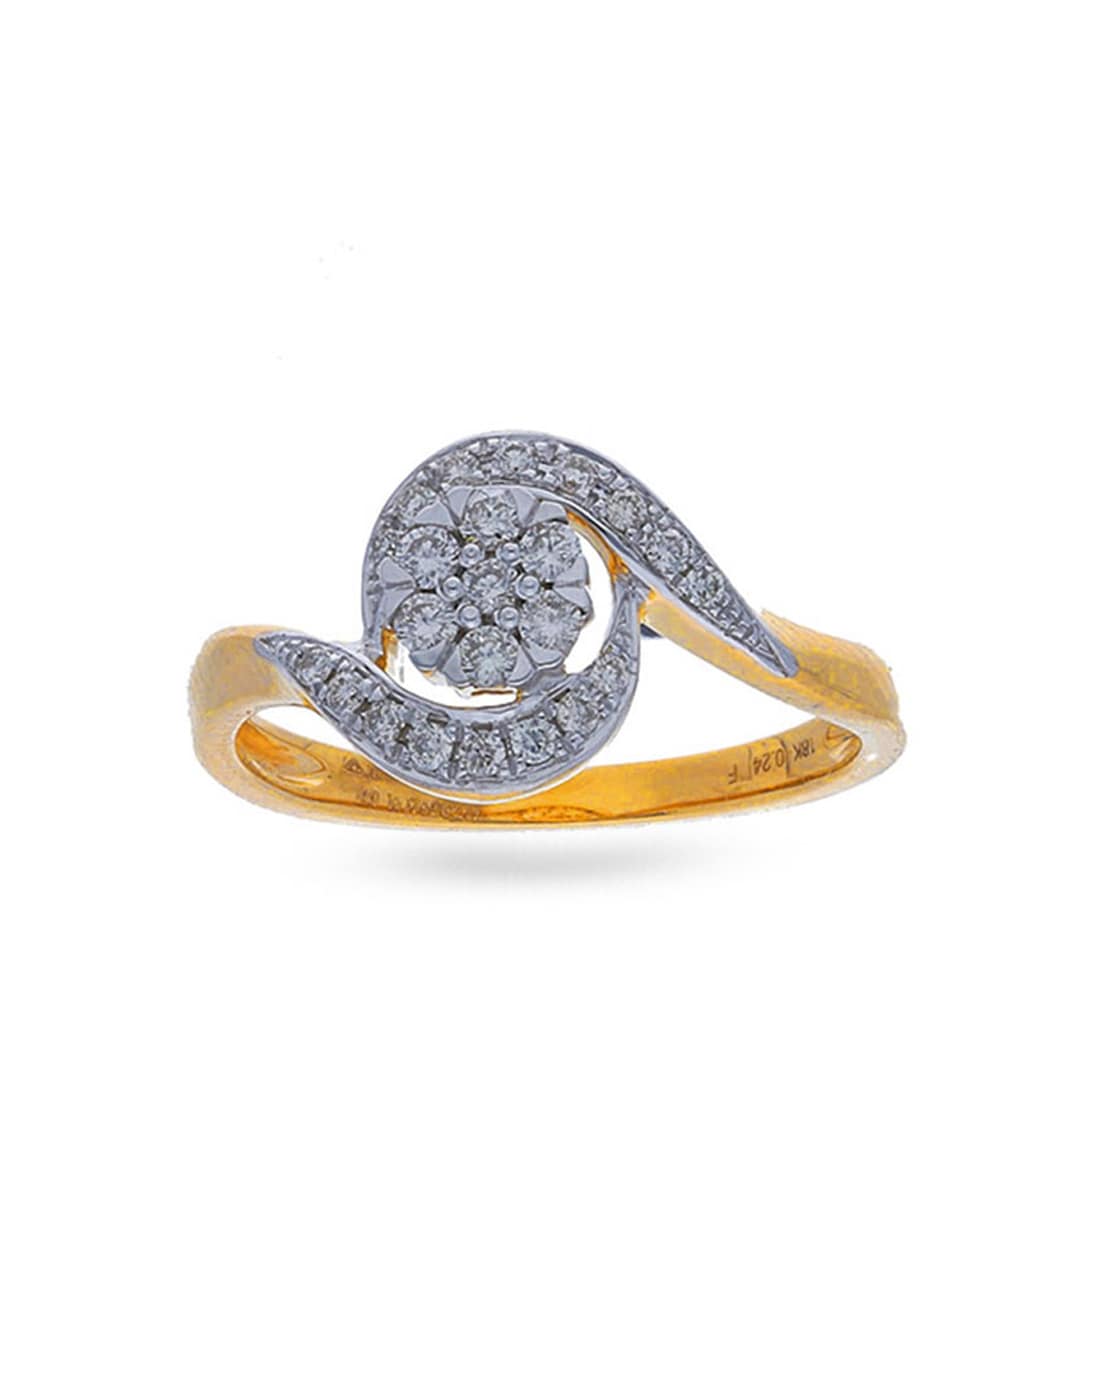 2 Carat Pear Diamond Engagement Ring, E VS2 Pear Engagement Ring, 14K White  Gold Diamond Ring, Side Stone Diamond Ring, Pear Shaped Diamond - Etsy